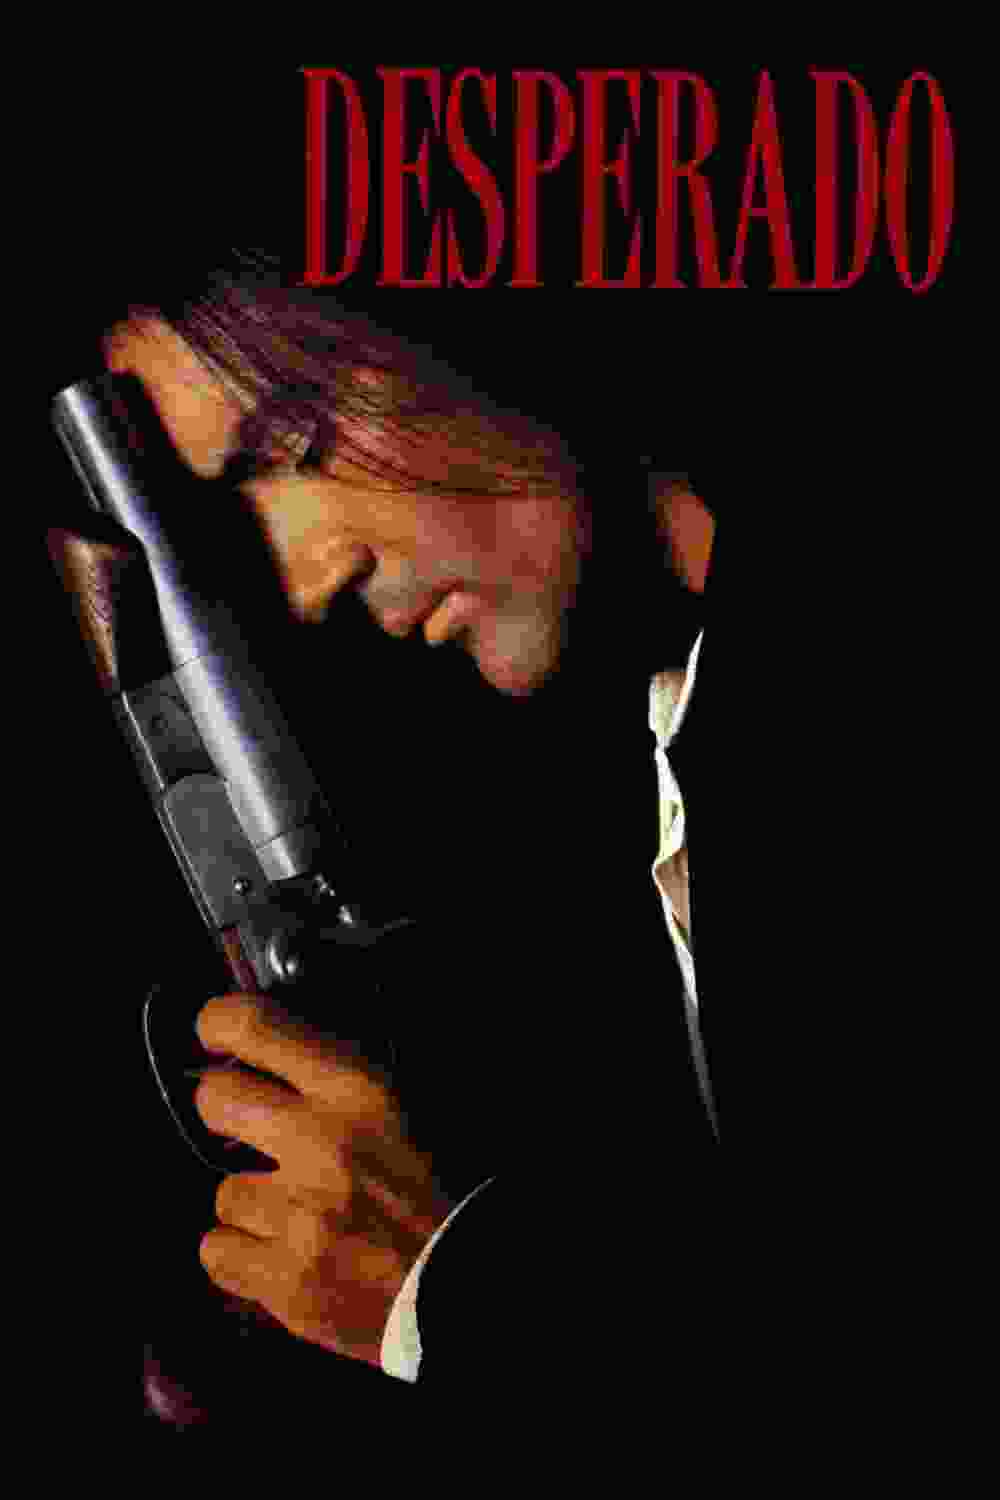 Desperado (1995) Antonio Banderas